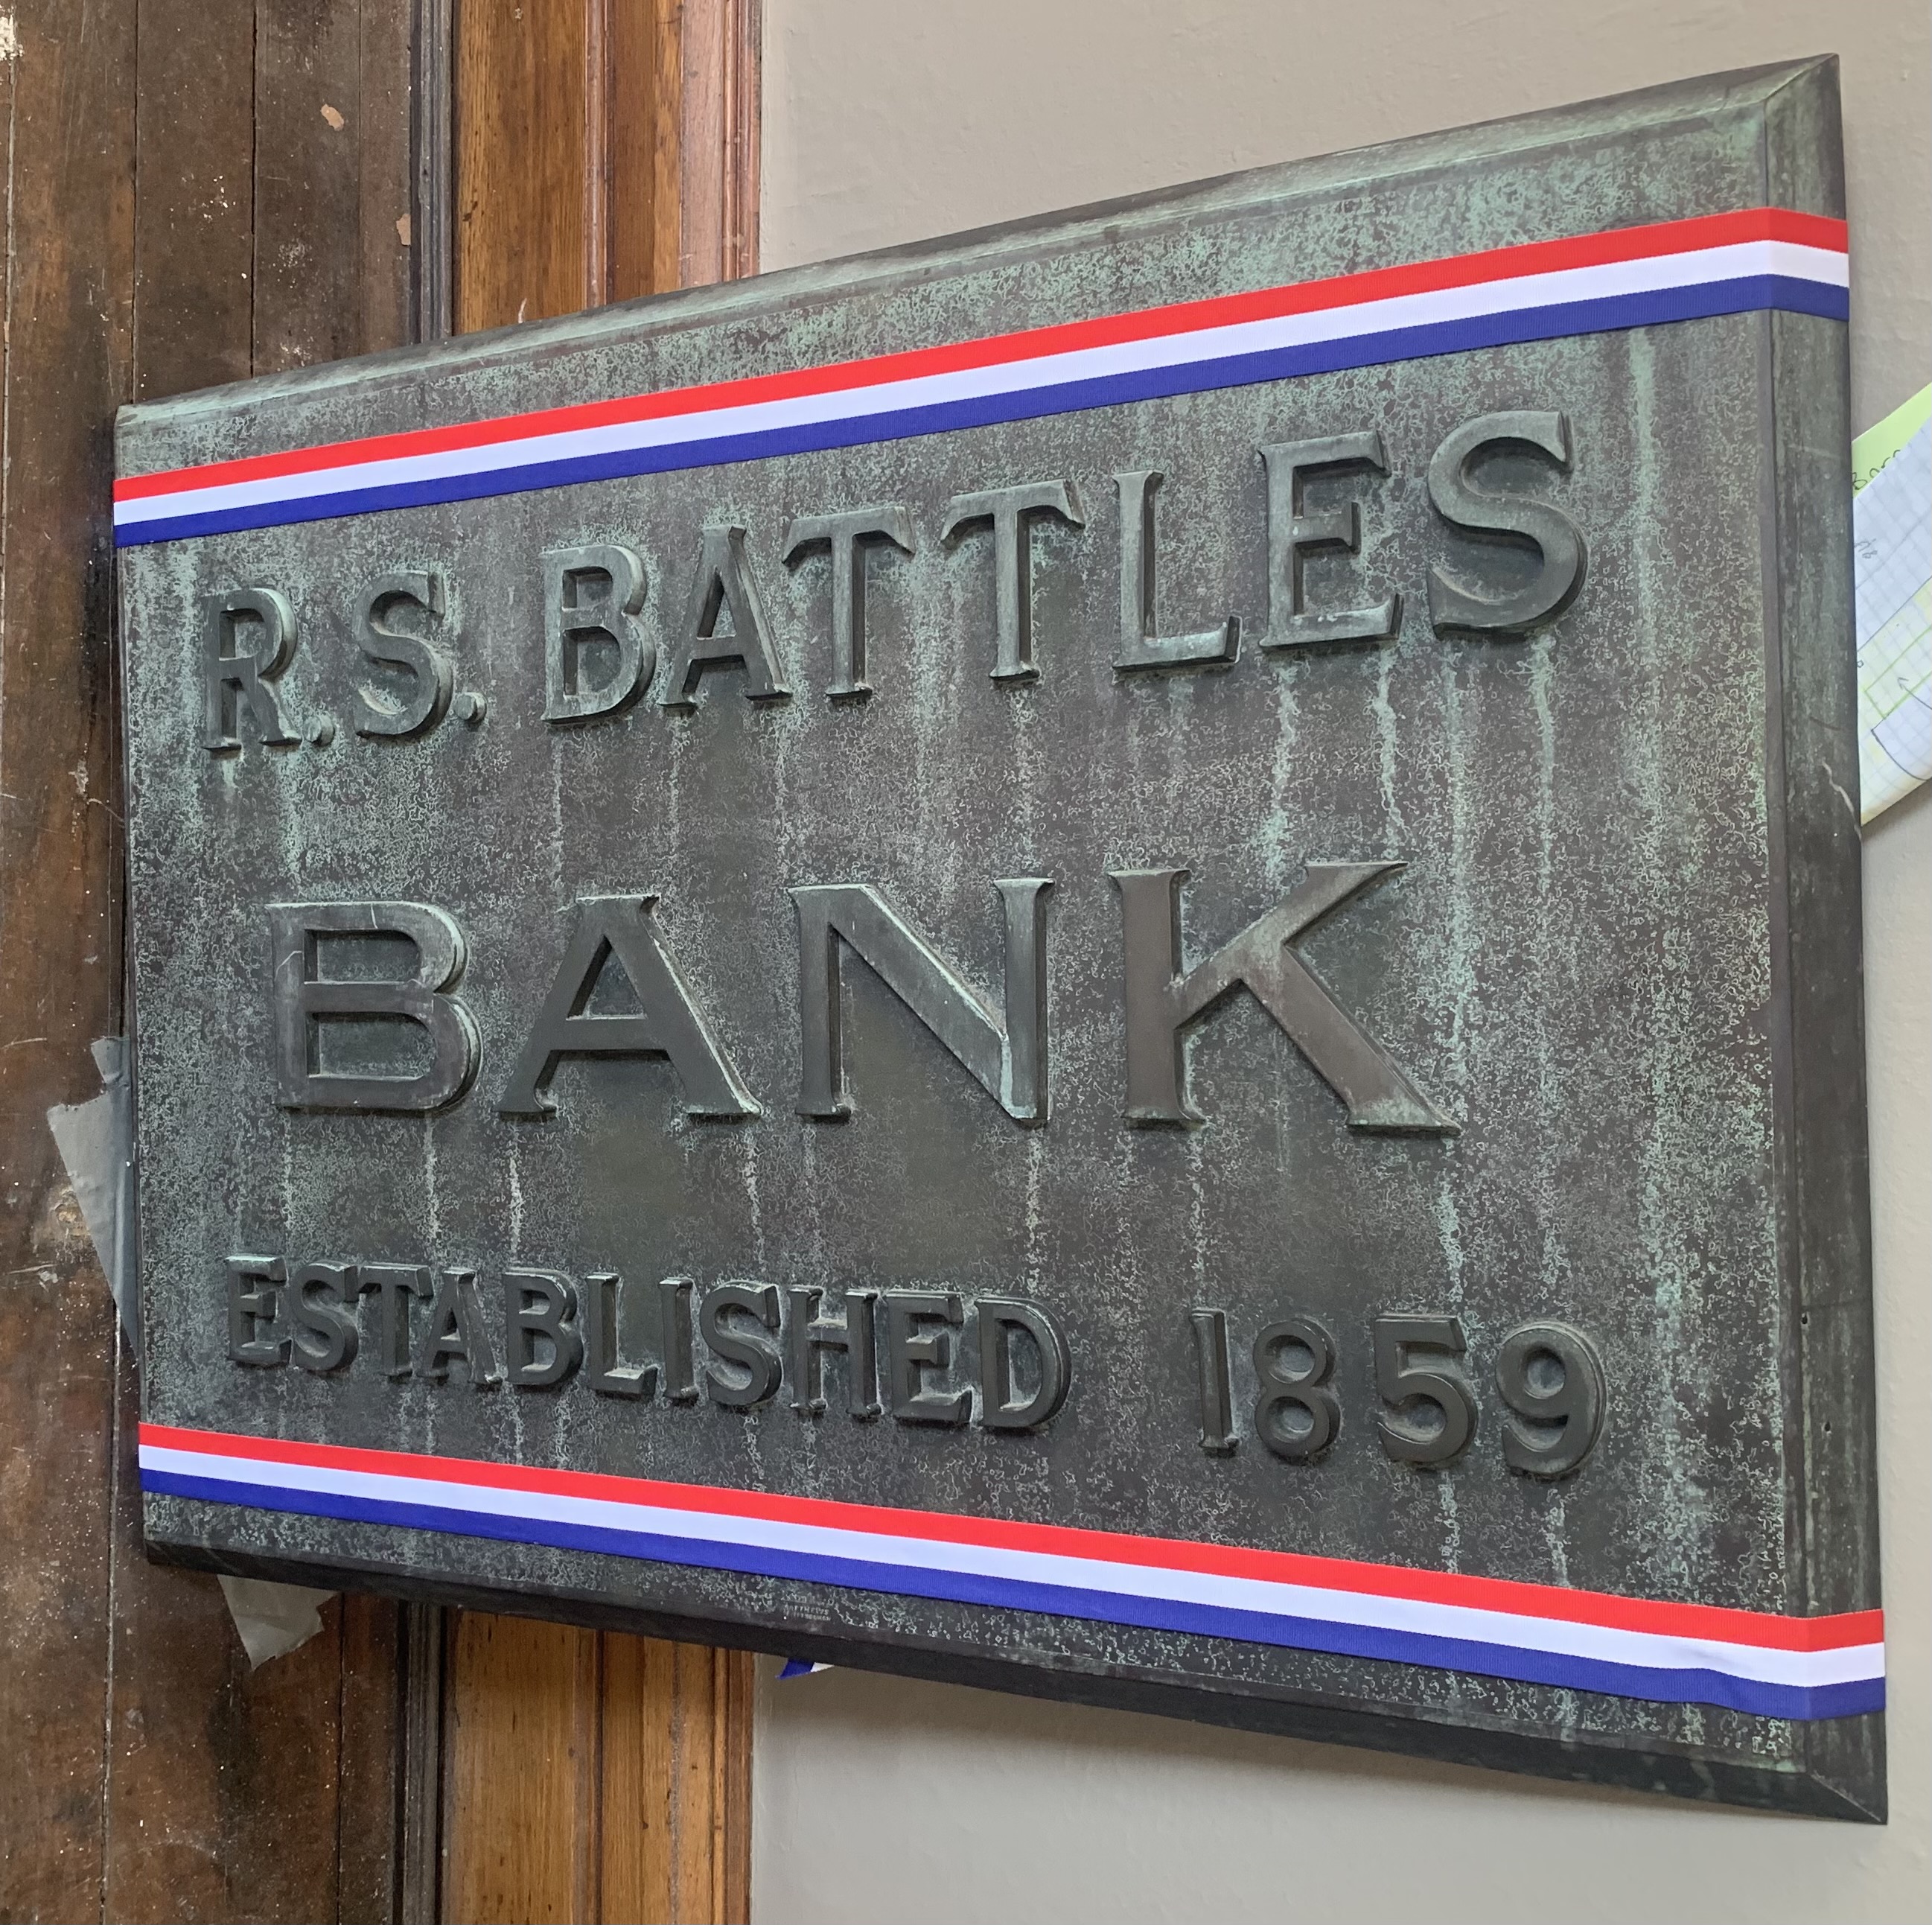 Battles Bank Sign 